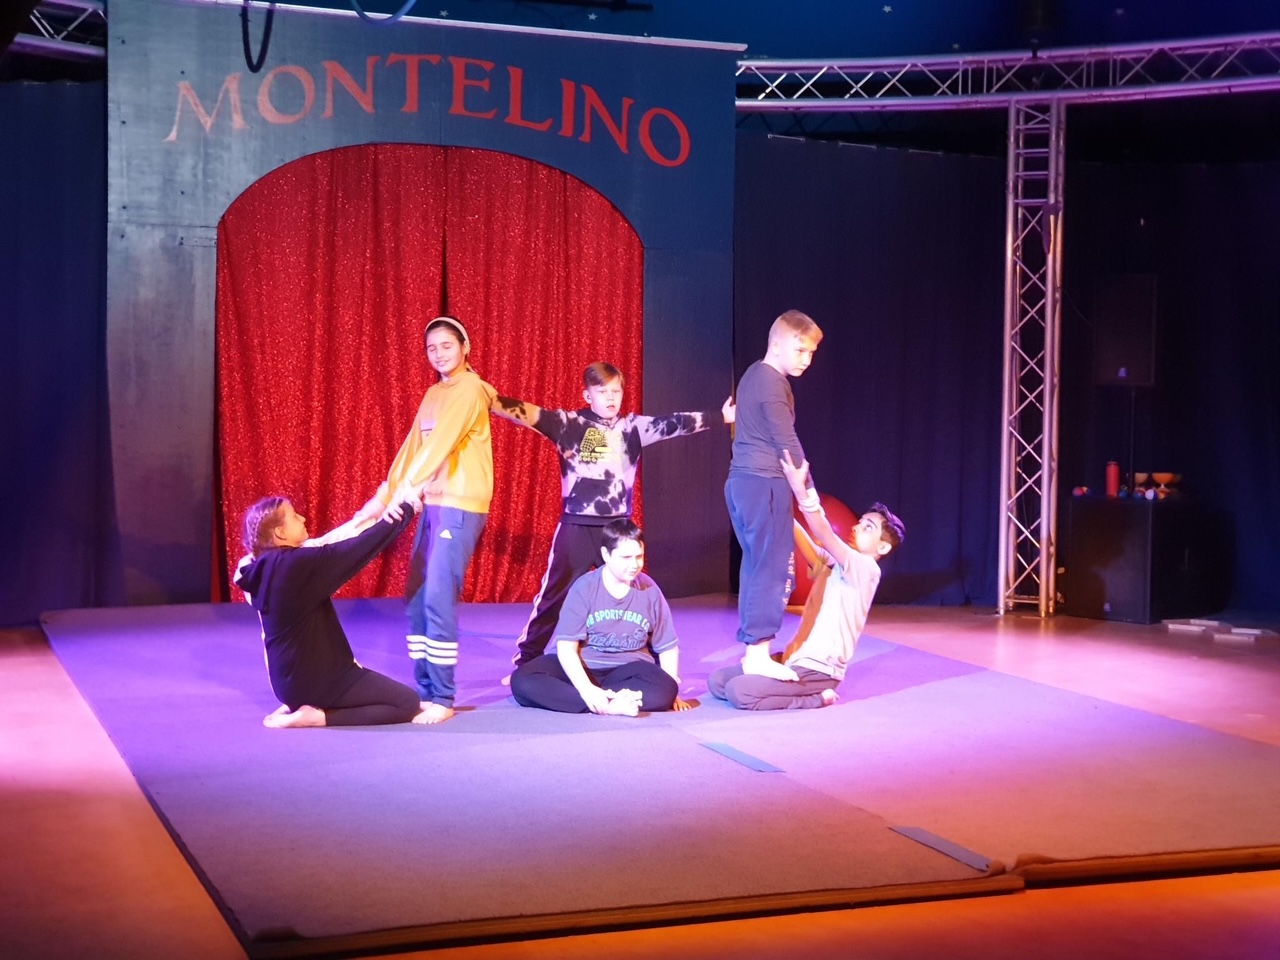 Zirkus-Projektwoche der 4. Klassen im Zirkus Montelino